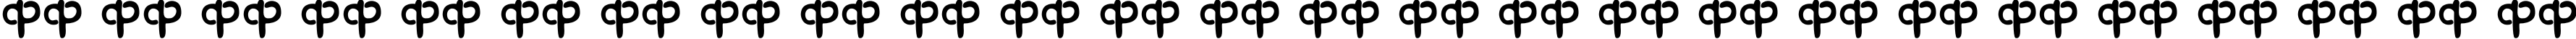 Пример написания английского алфавита шрифтом Nobr1